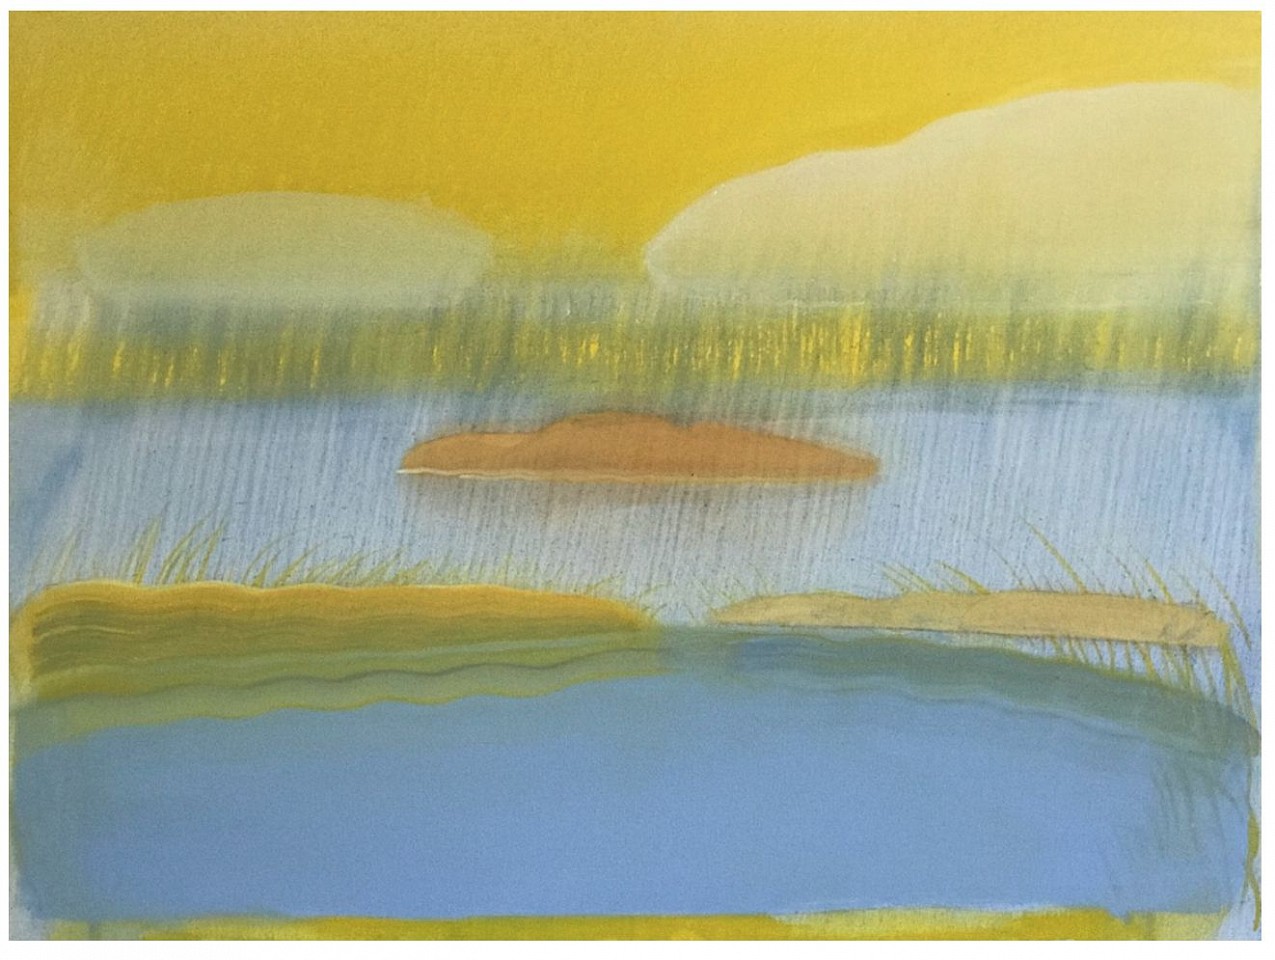 Elizabeth Osborne, Rainfall, 2020
Oil on canvas, 36 x 48 in. (91.4 x 121.9 cm)
OSB-00192